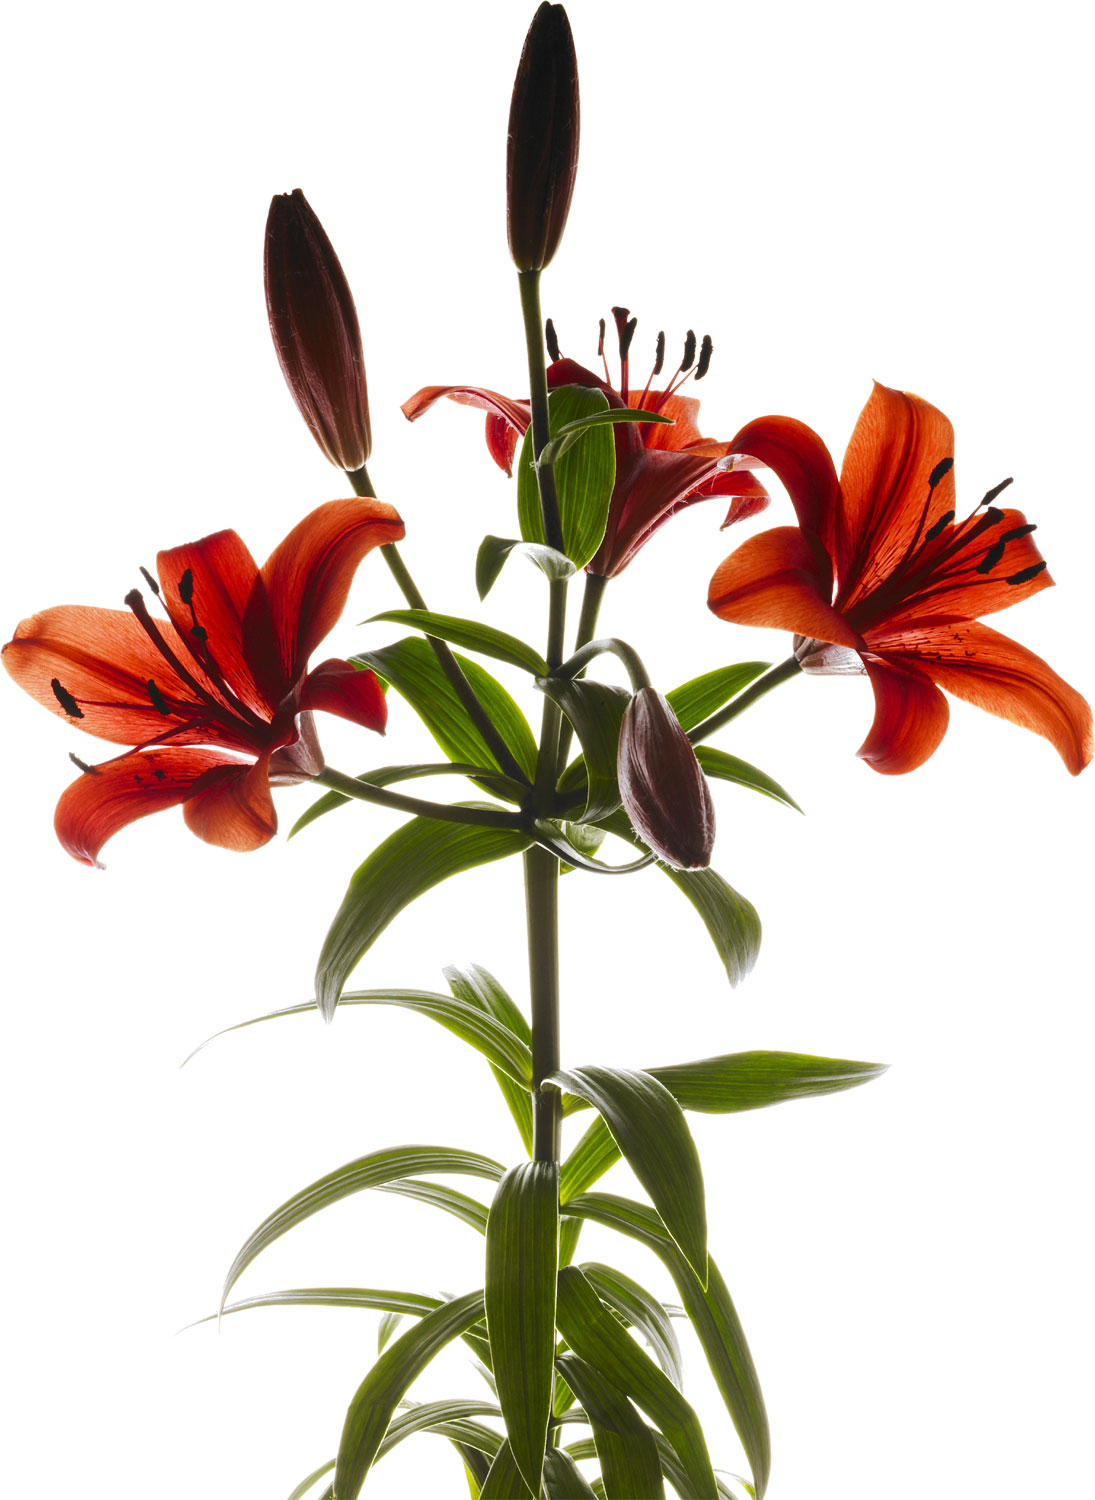 百合 ゆり の花の写真 画像 フリー素材 No 294 ユリ 赤 つぼみ 葉